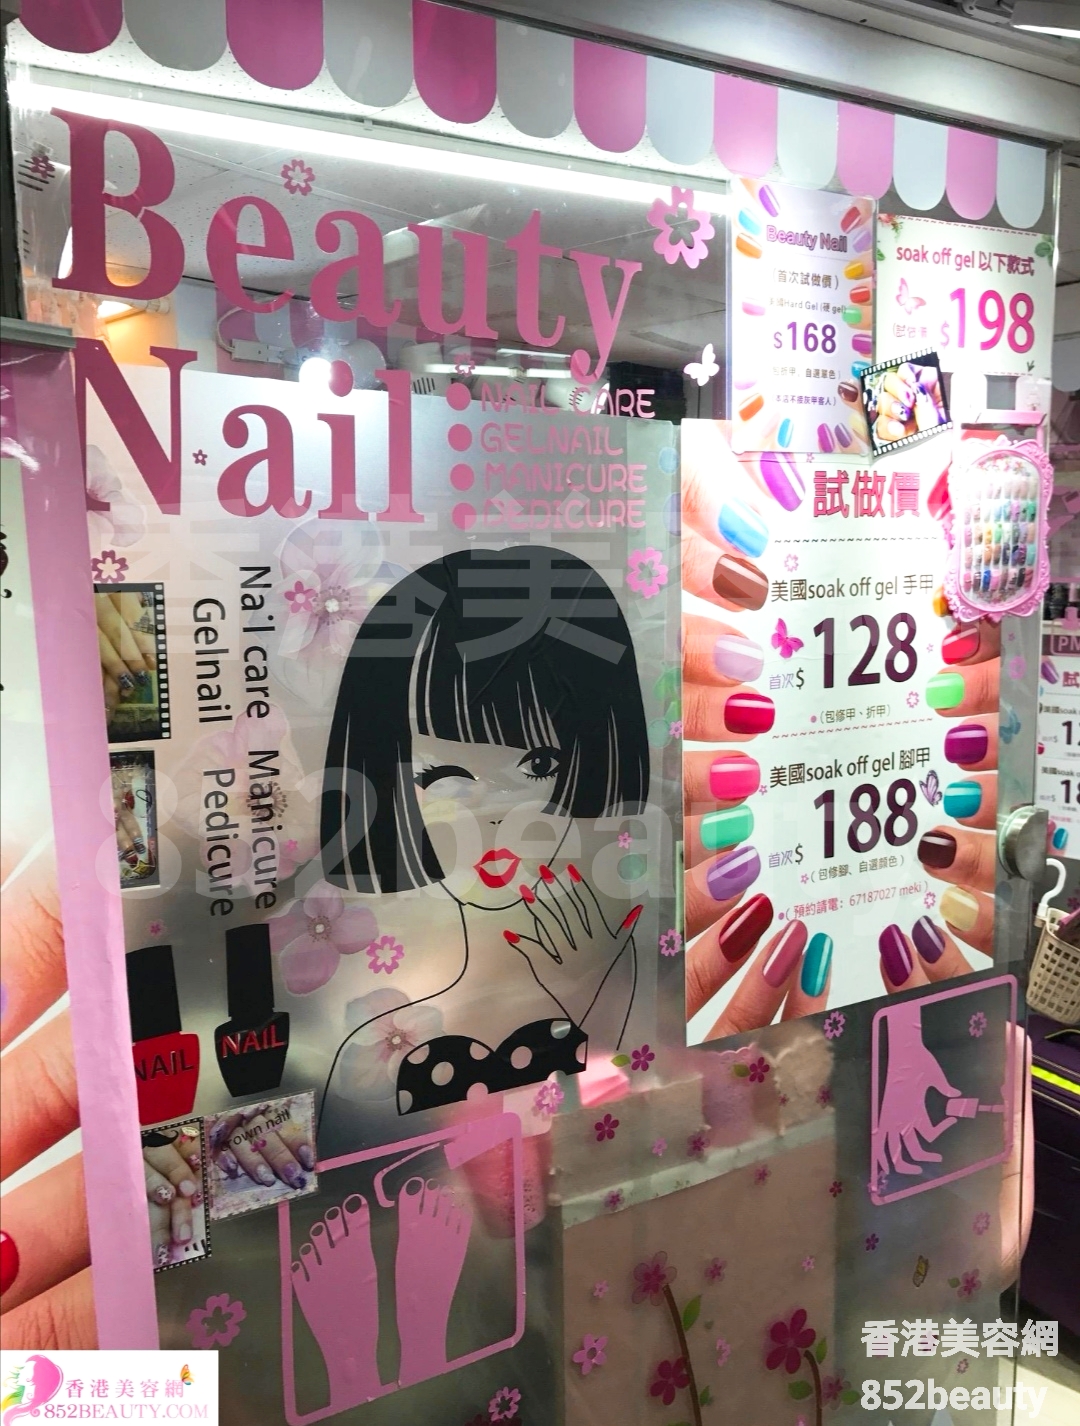 : Beauty Nail